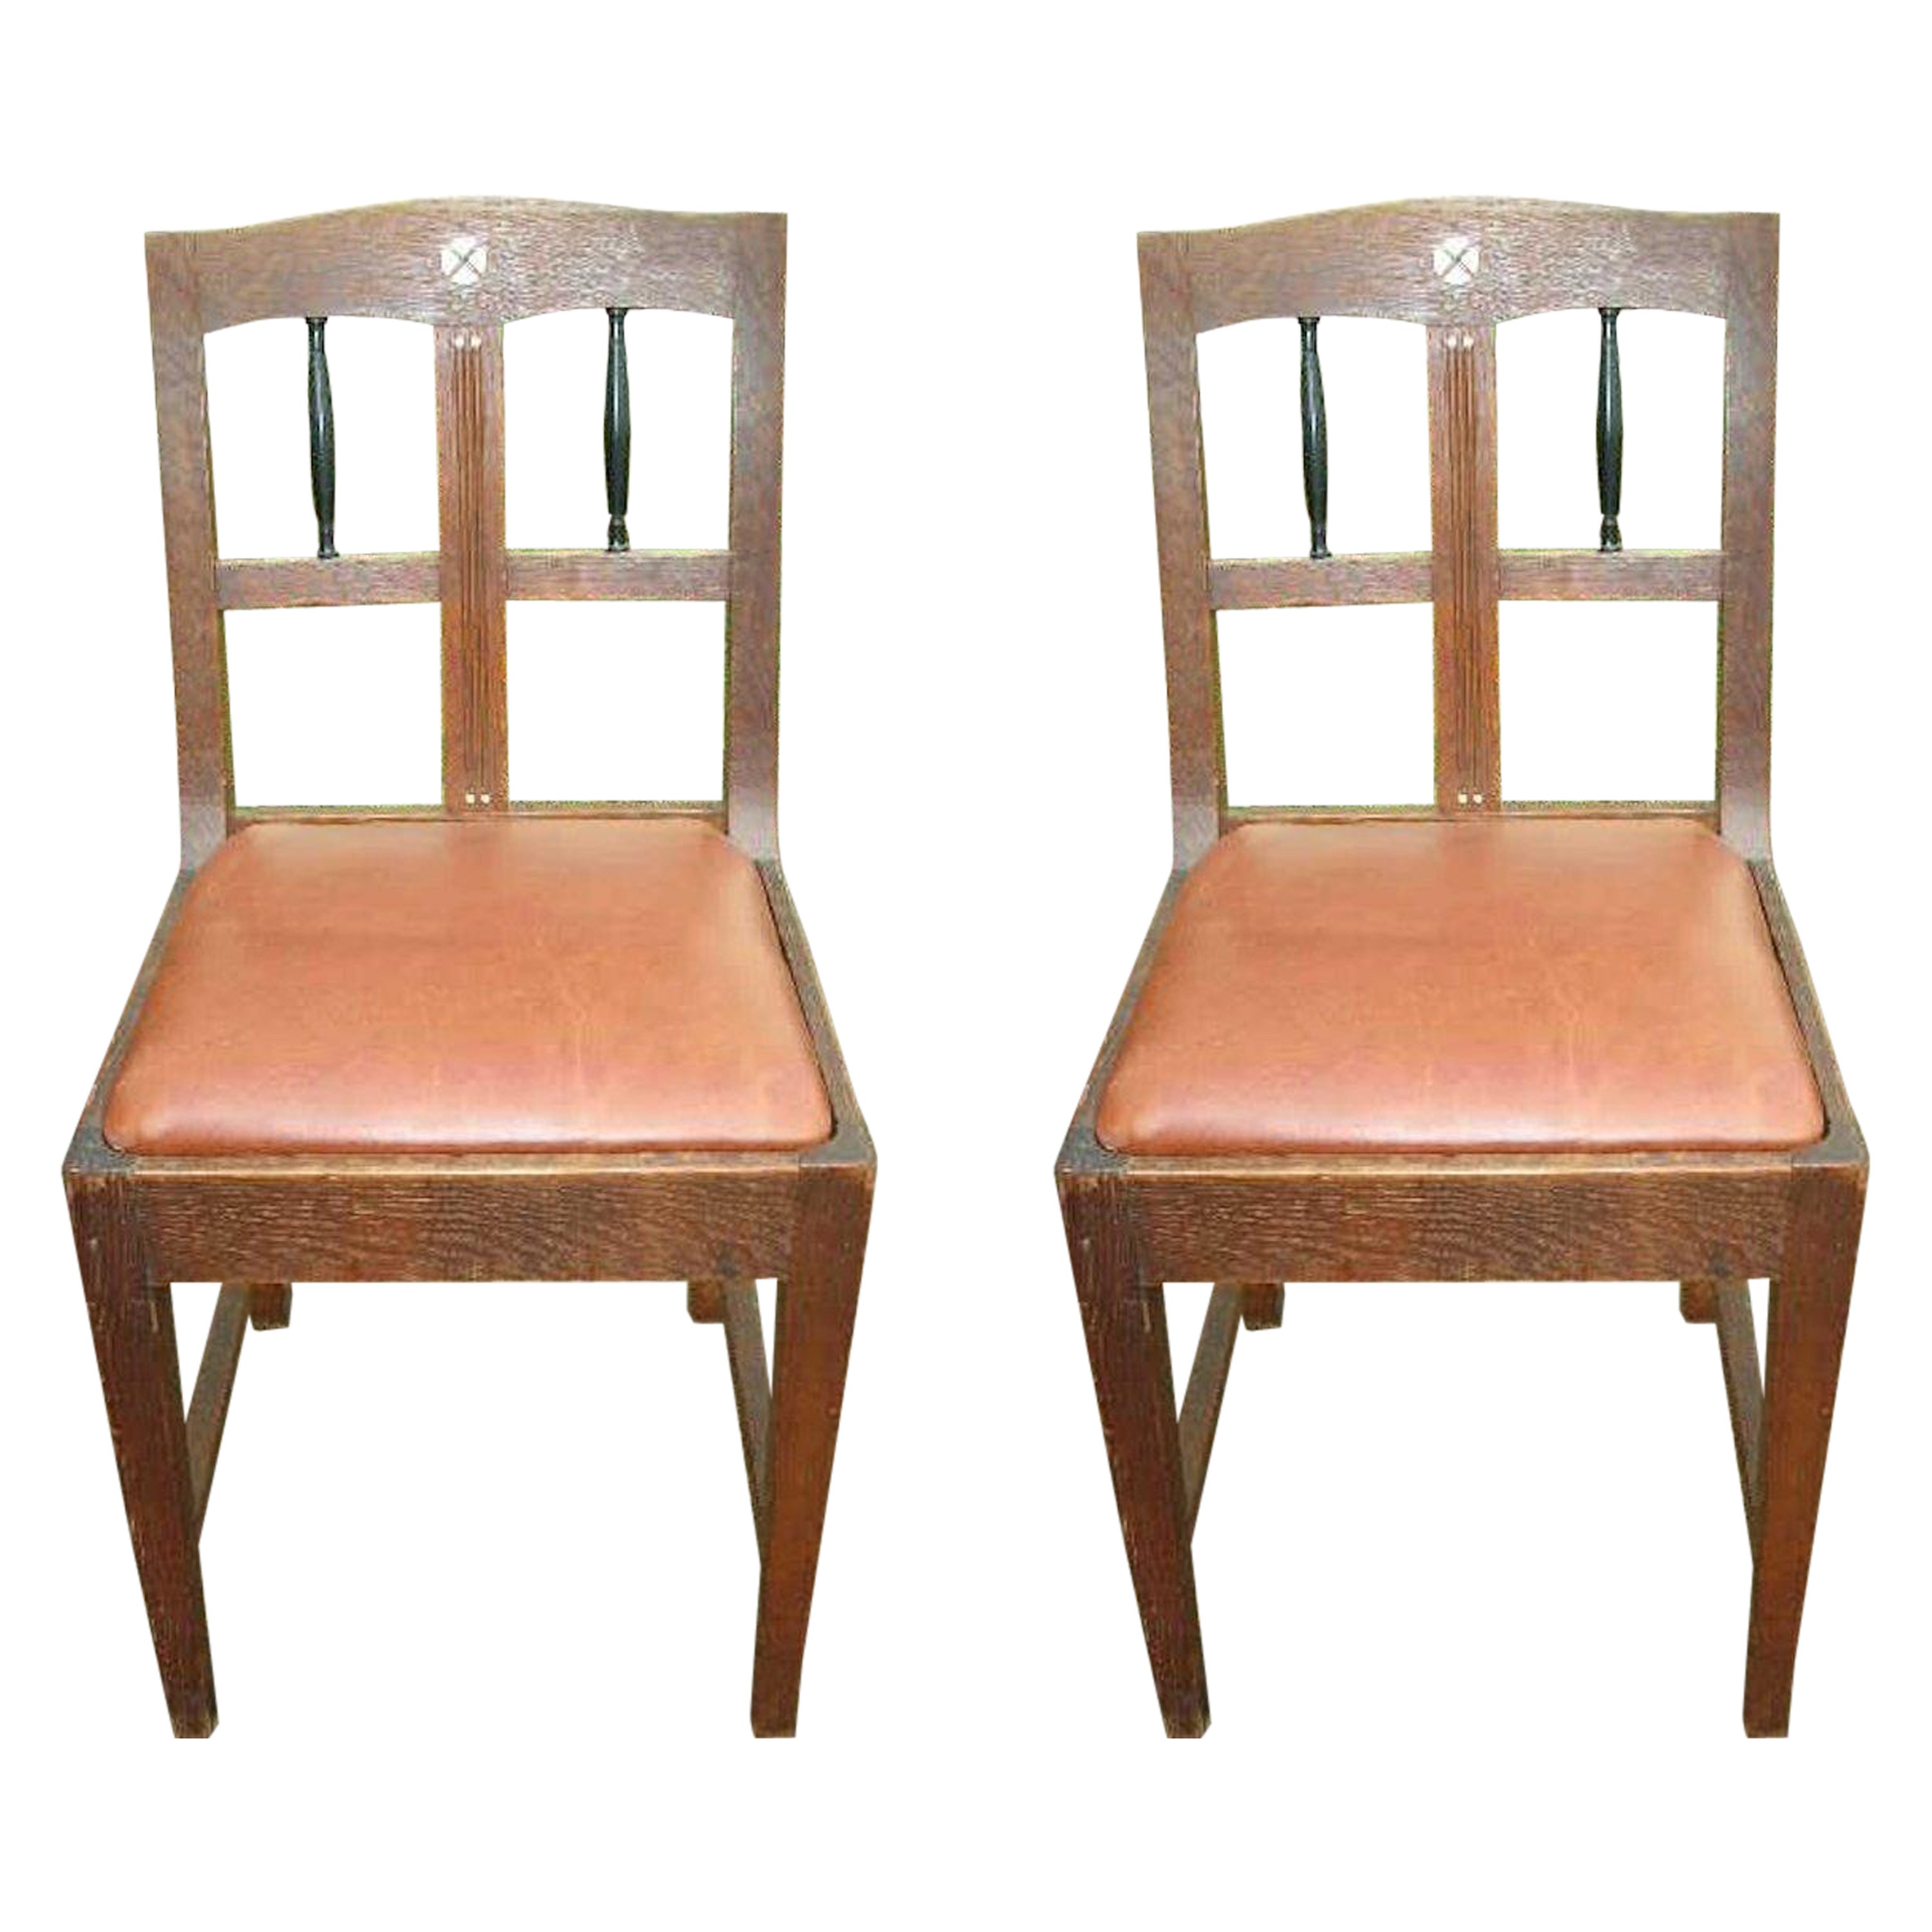 Paire de chaises d'appoint en chêne de style sécessionniste avec fuseaux ébénisés